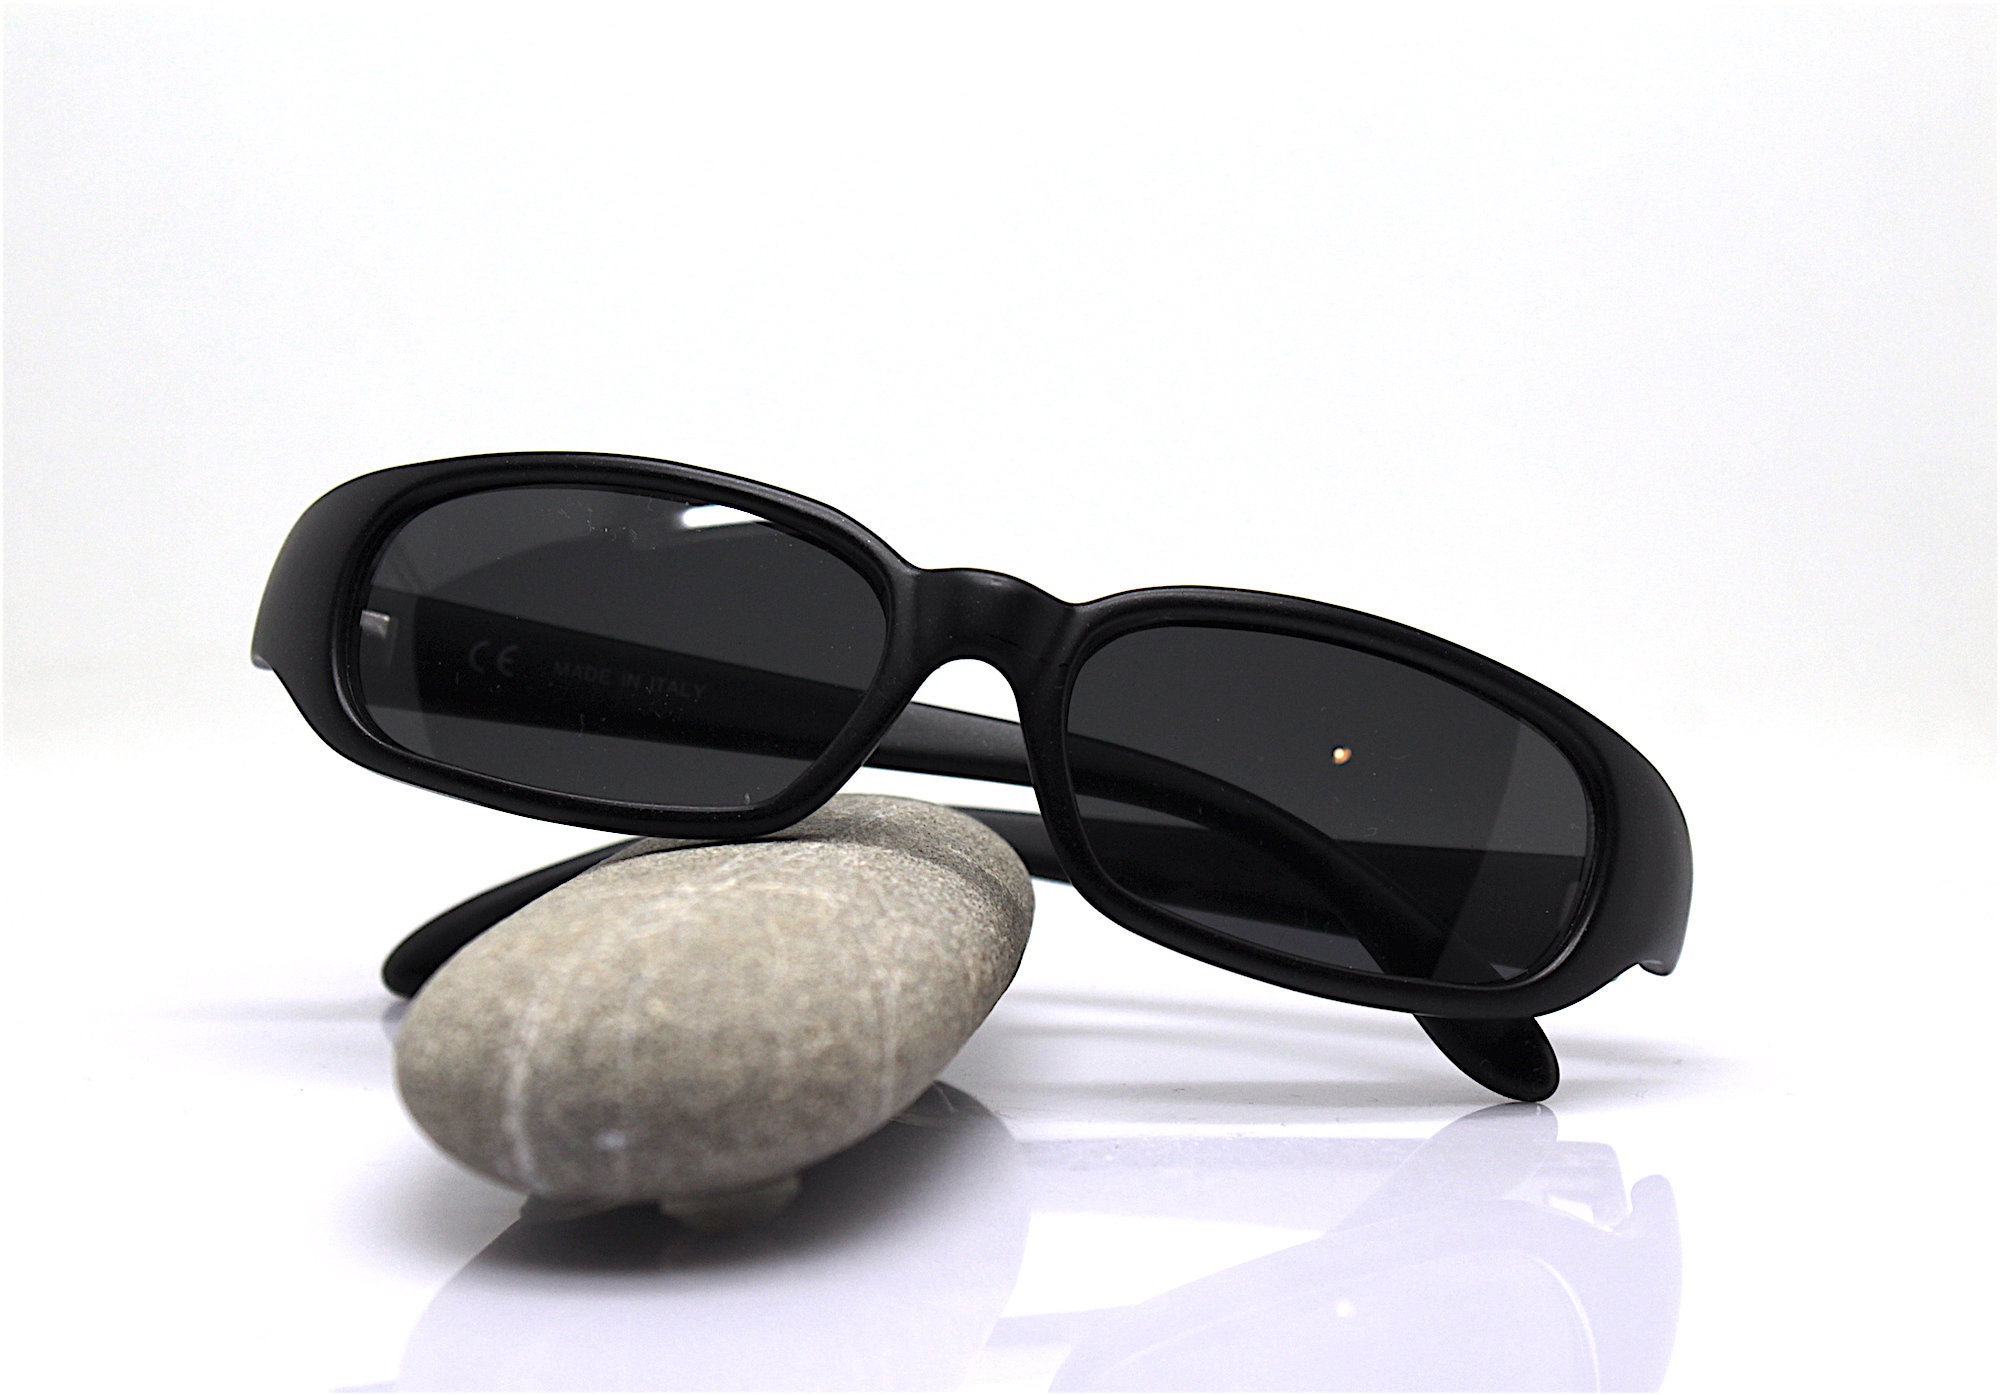 Made in Italy Small Size Rectangular Sunglasses Men Matt Black Frame Black Lens Vintage 90S, Small Black Rectangular Men's Sunglasses